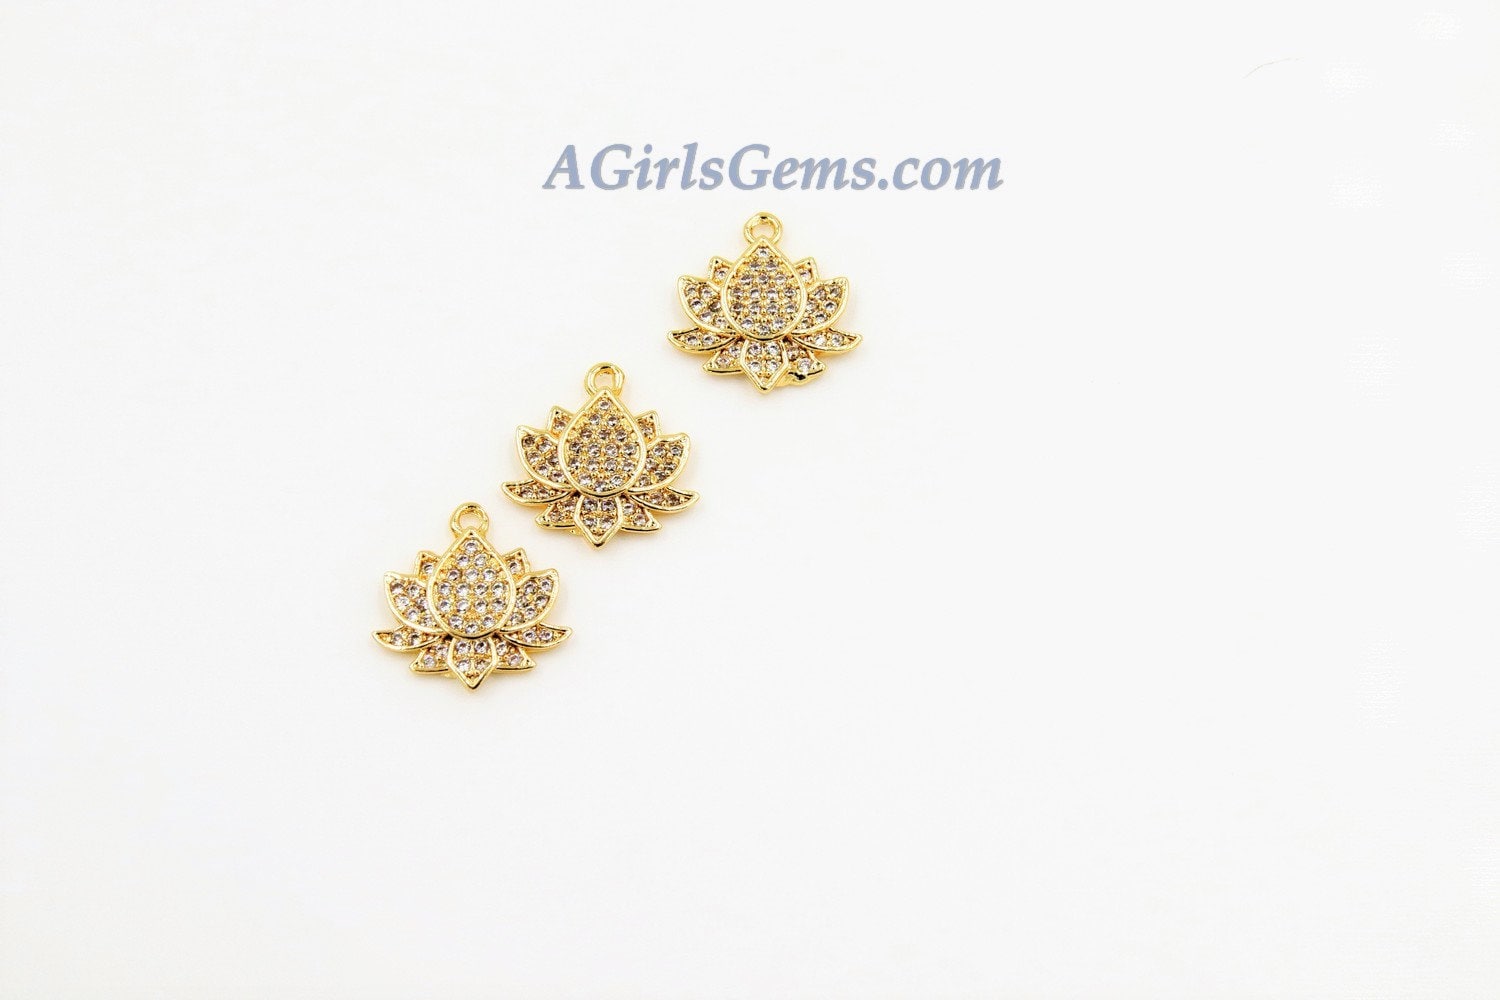 Tiny Lotus Flower Charm, 2 Pcs Gold Succulent Lotus Flower for Yoga Crystal Bracele, Necklace Pendant